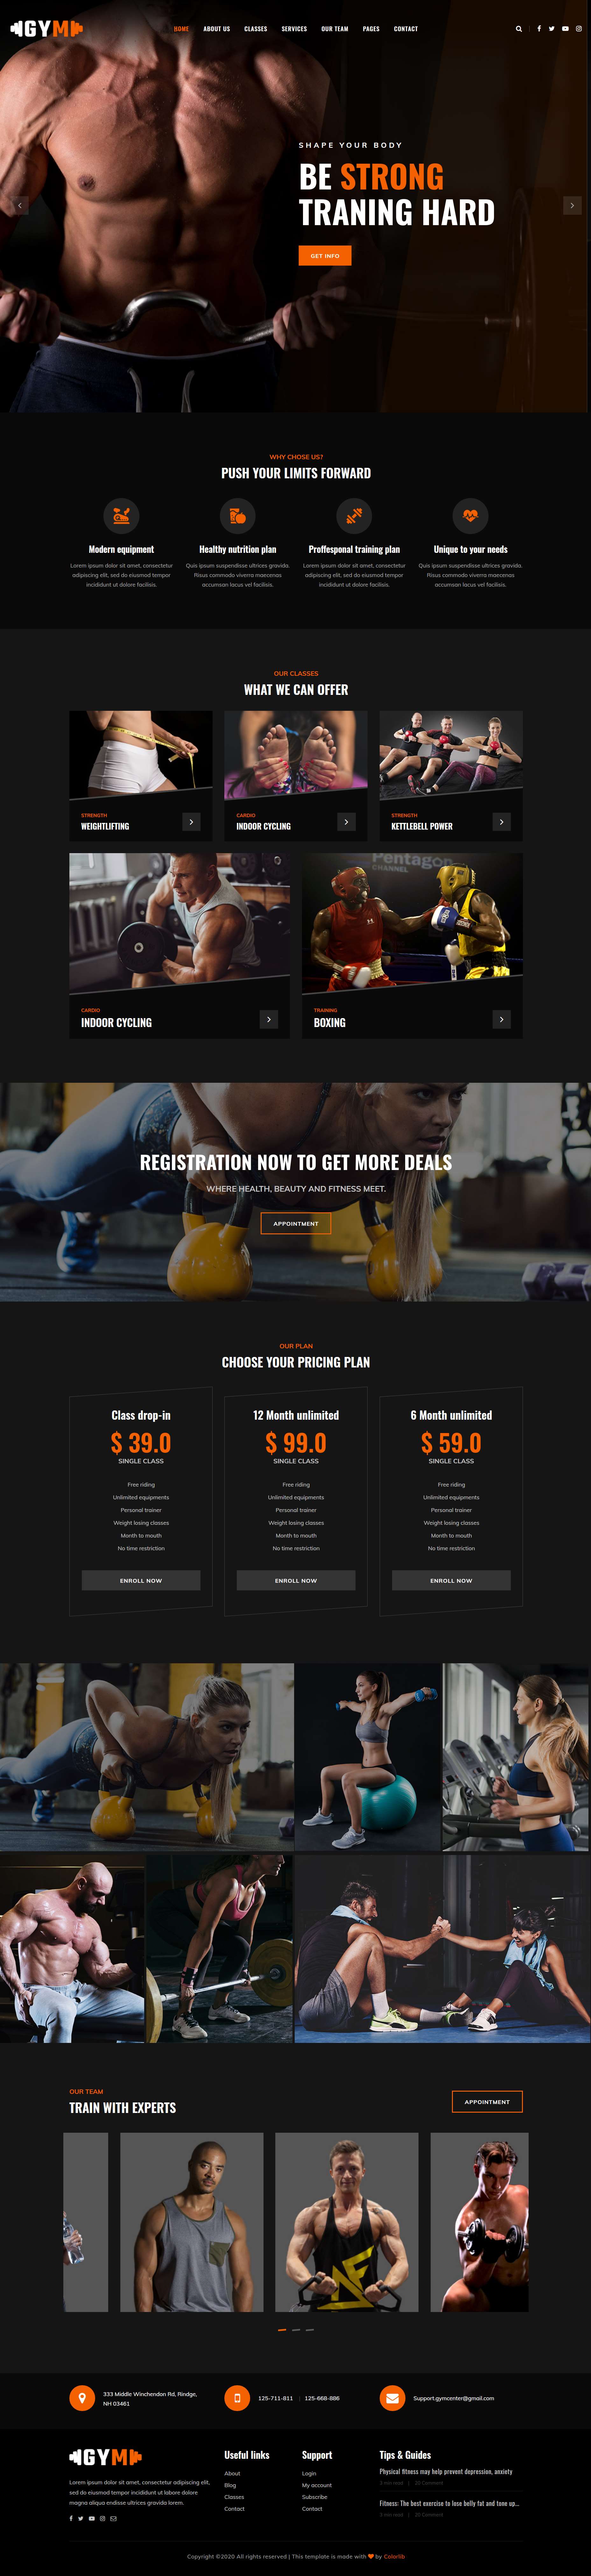 HTML5橙色宽屏样式健身项目网页模板代码下载